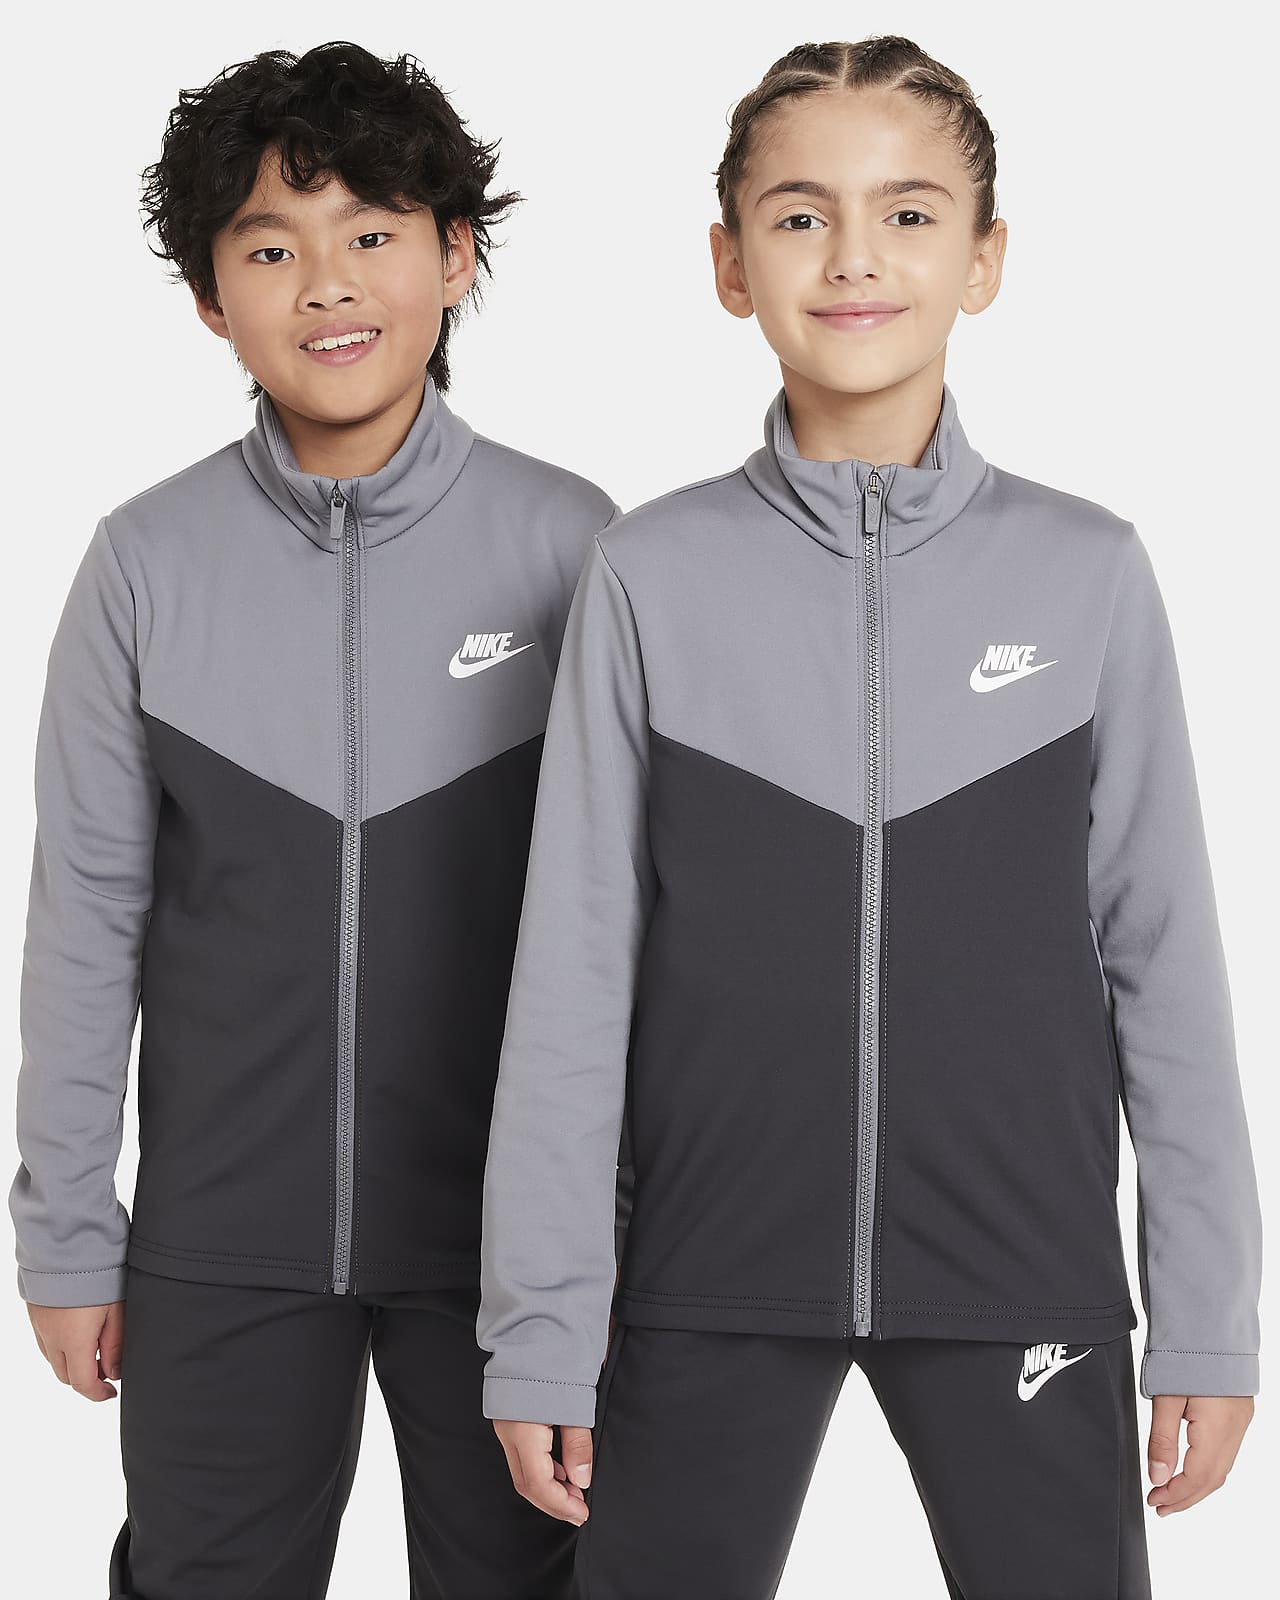 Nike Sportswear Older Kids' Tracksuit. Nike CA